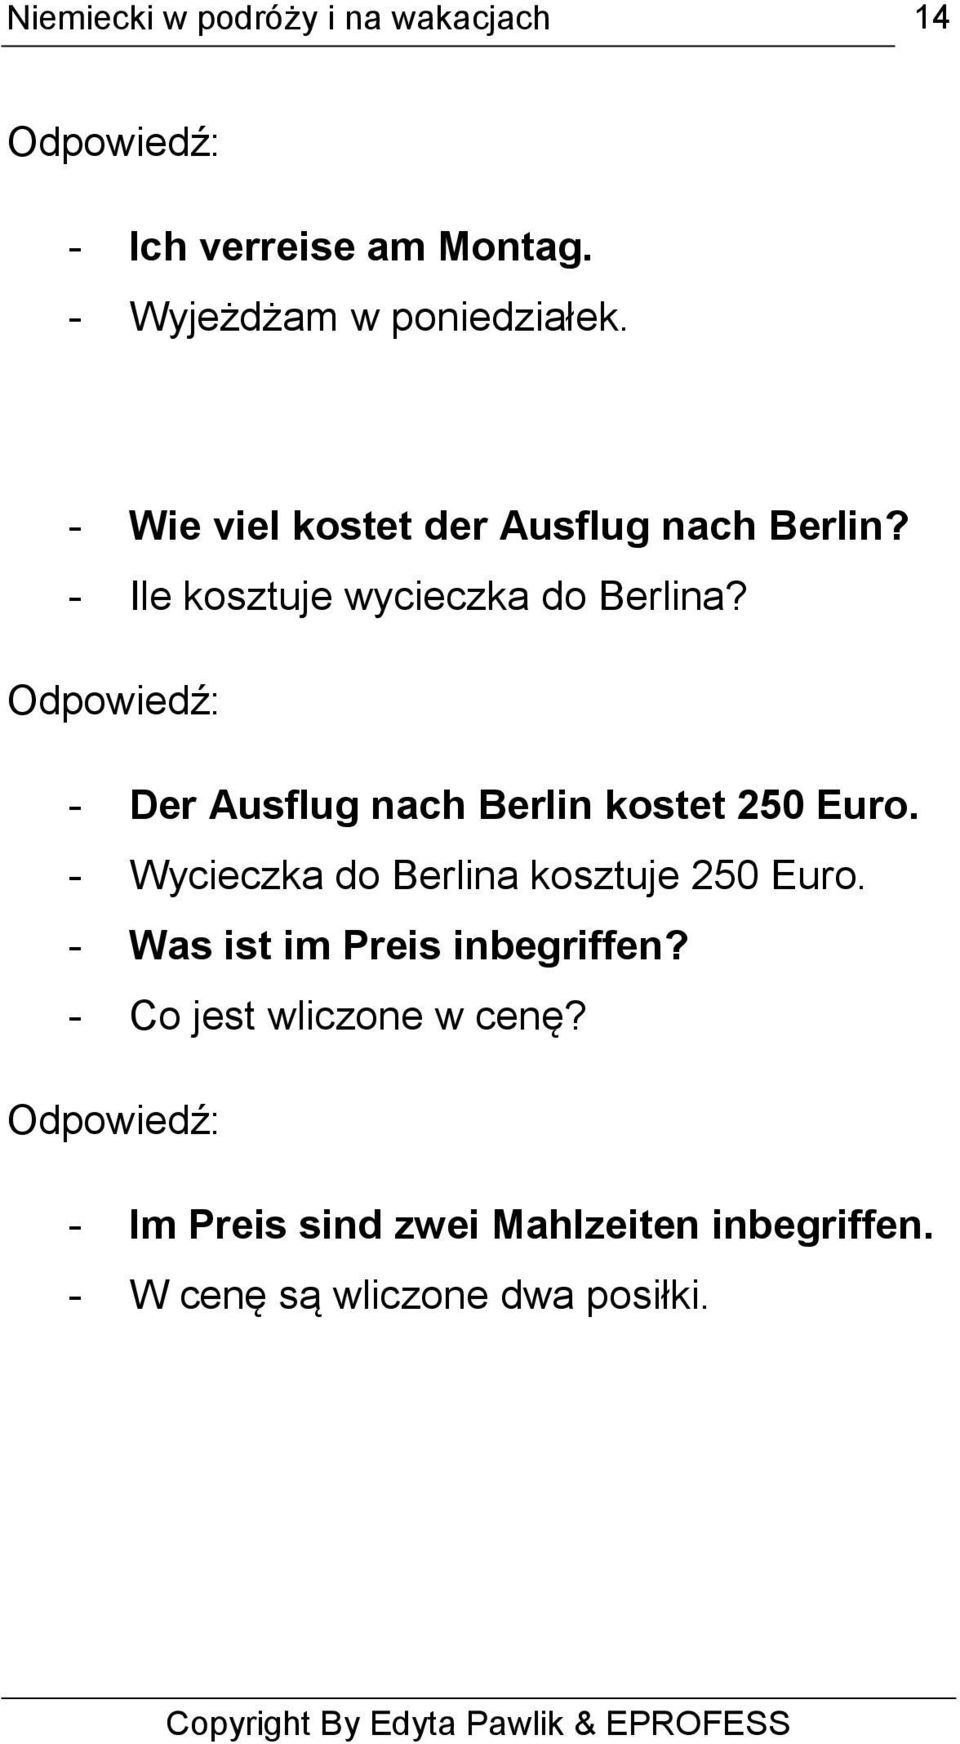 Odpowiedź: - Der Ausflug nach Berlin kostet 250 Euro. - Wycieczka do Berlina kosztuje 250 Euro.